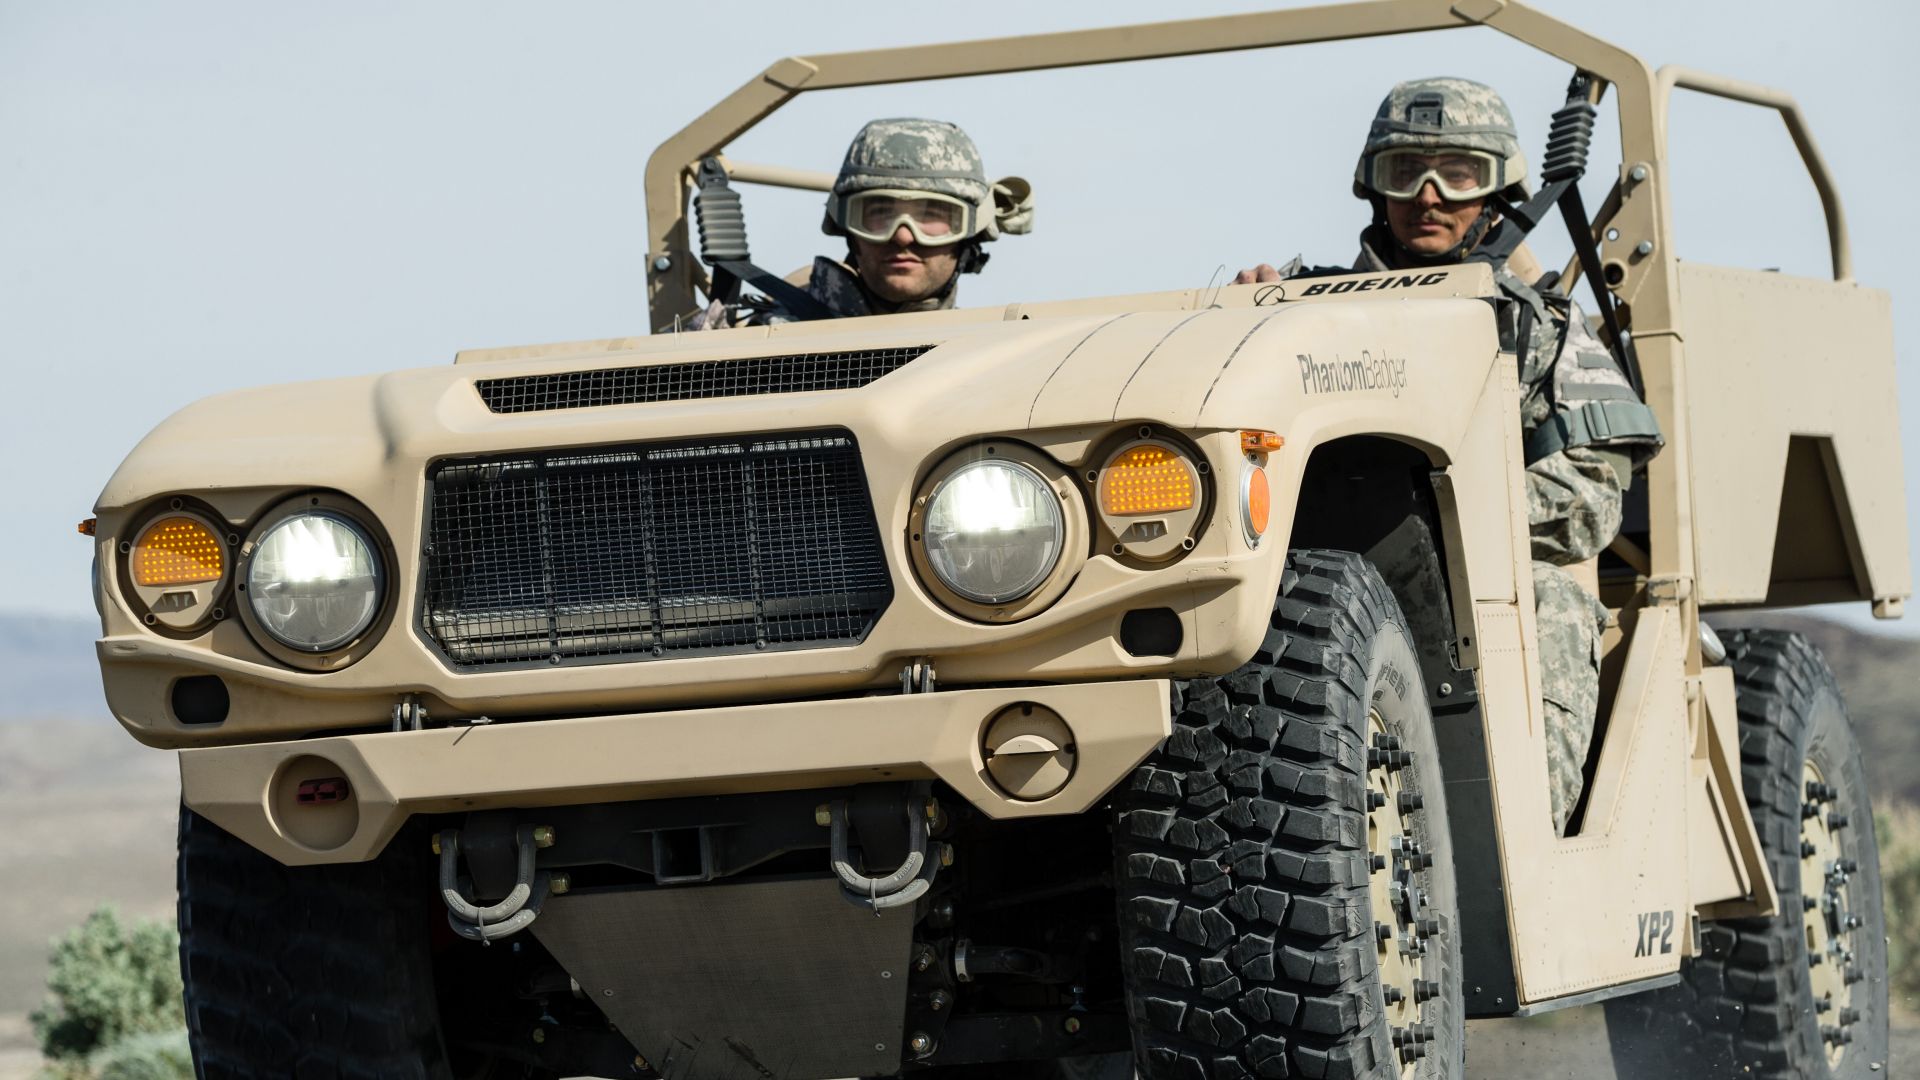 Фантом Бэджер, автомобиль боевой поддержки, Армия США, Phantom Badger, combat support vehicle, U.S. Army (horizontal)